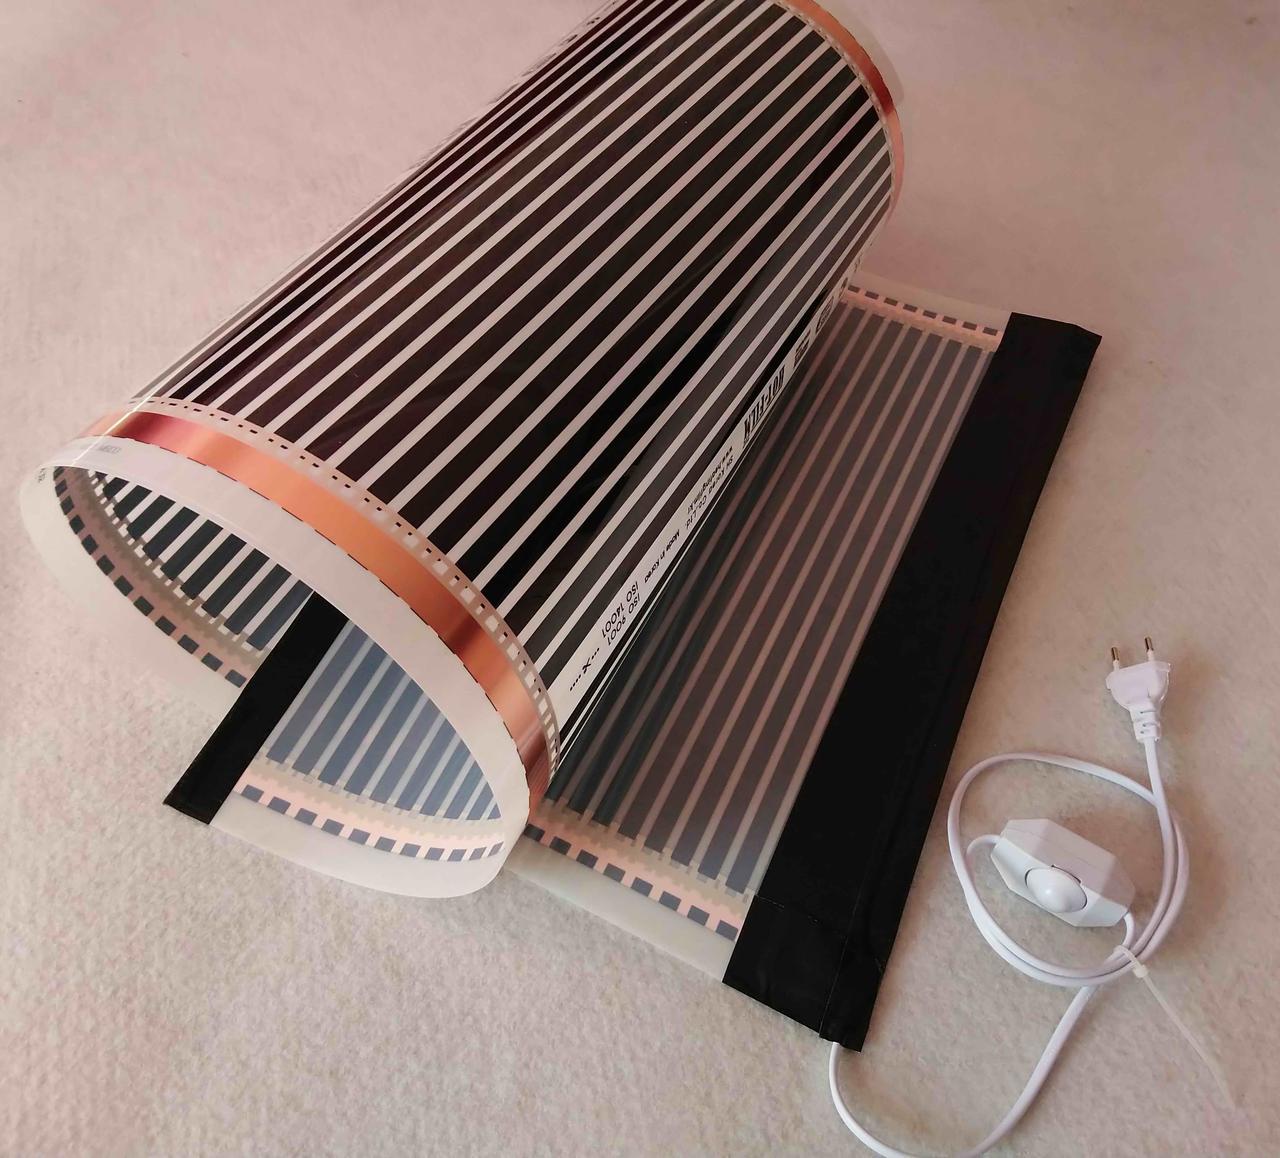 Електричний килимок-сушарка 50х25 (обігрівач для курчат, обігрів тераріуму) 25 Вт, фото 1